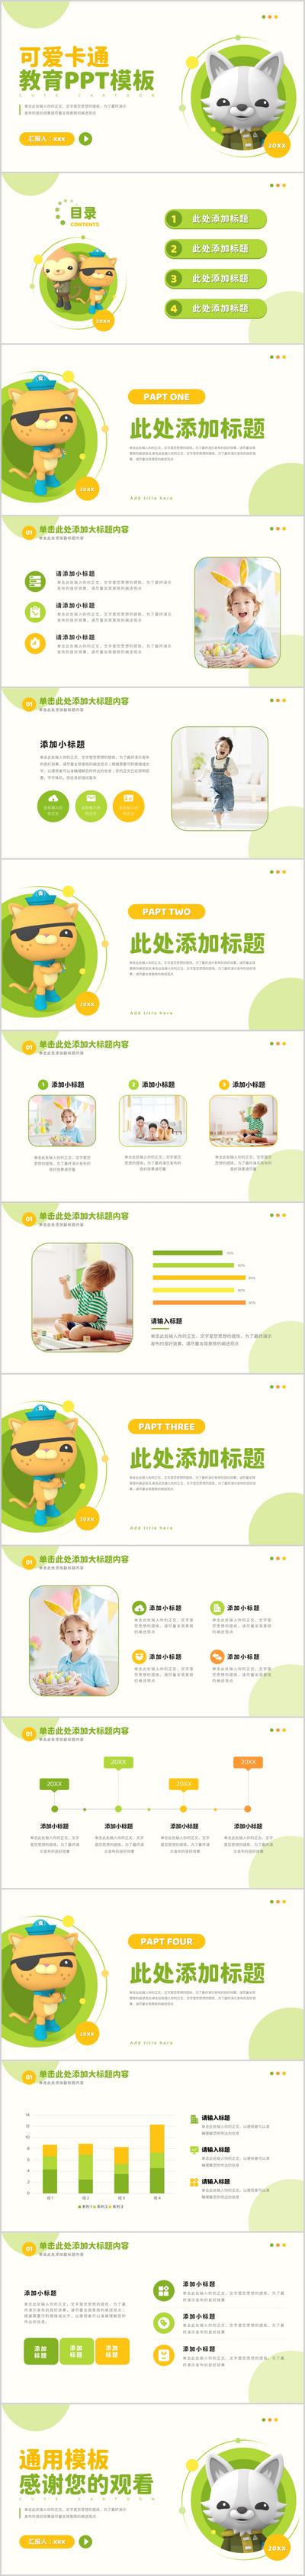 南门网 广告 海报 亲子 ppt 卡通 可爱 教育 绿色 吉祥物 IP 玩偶 系列 品质